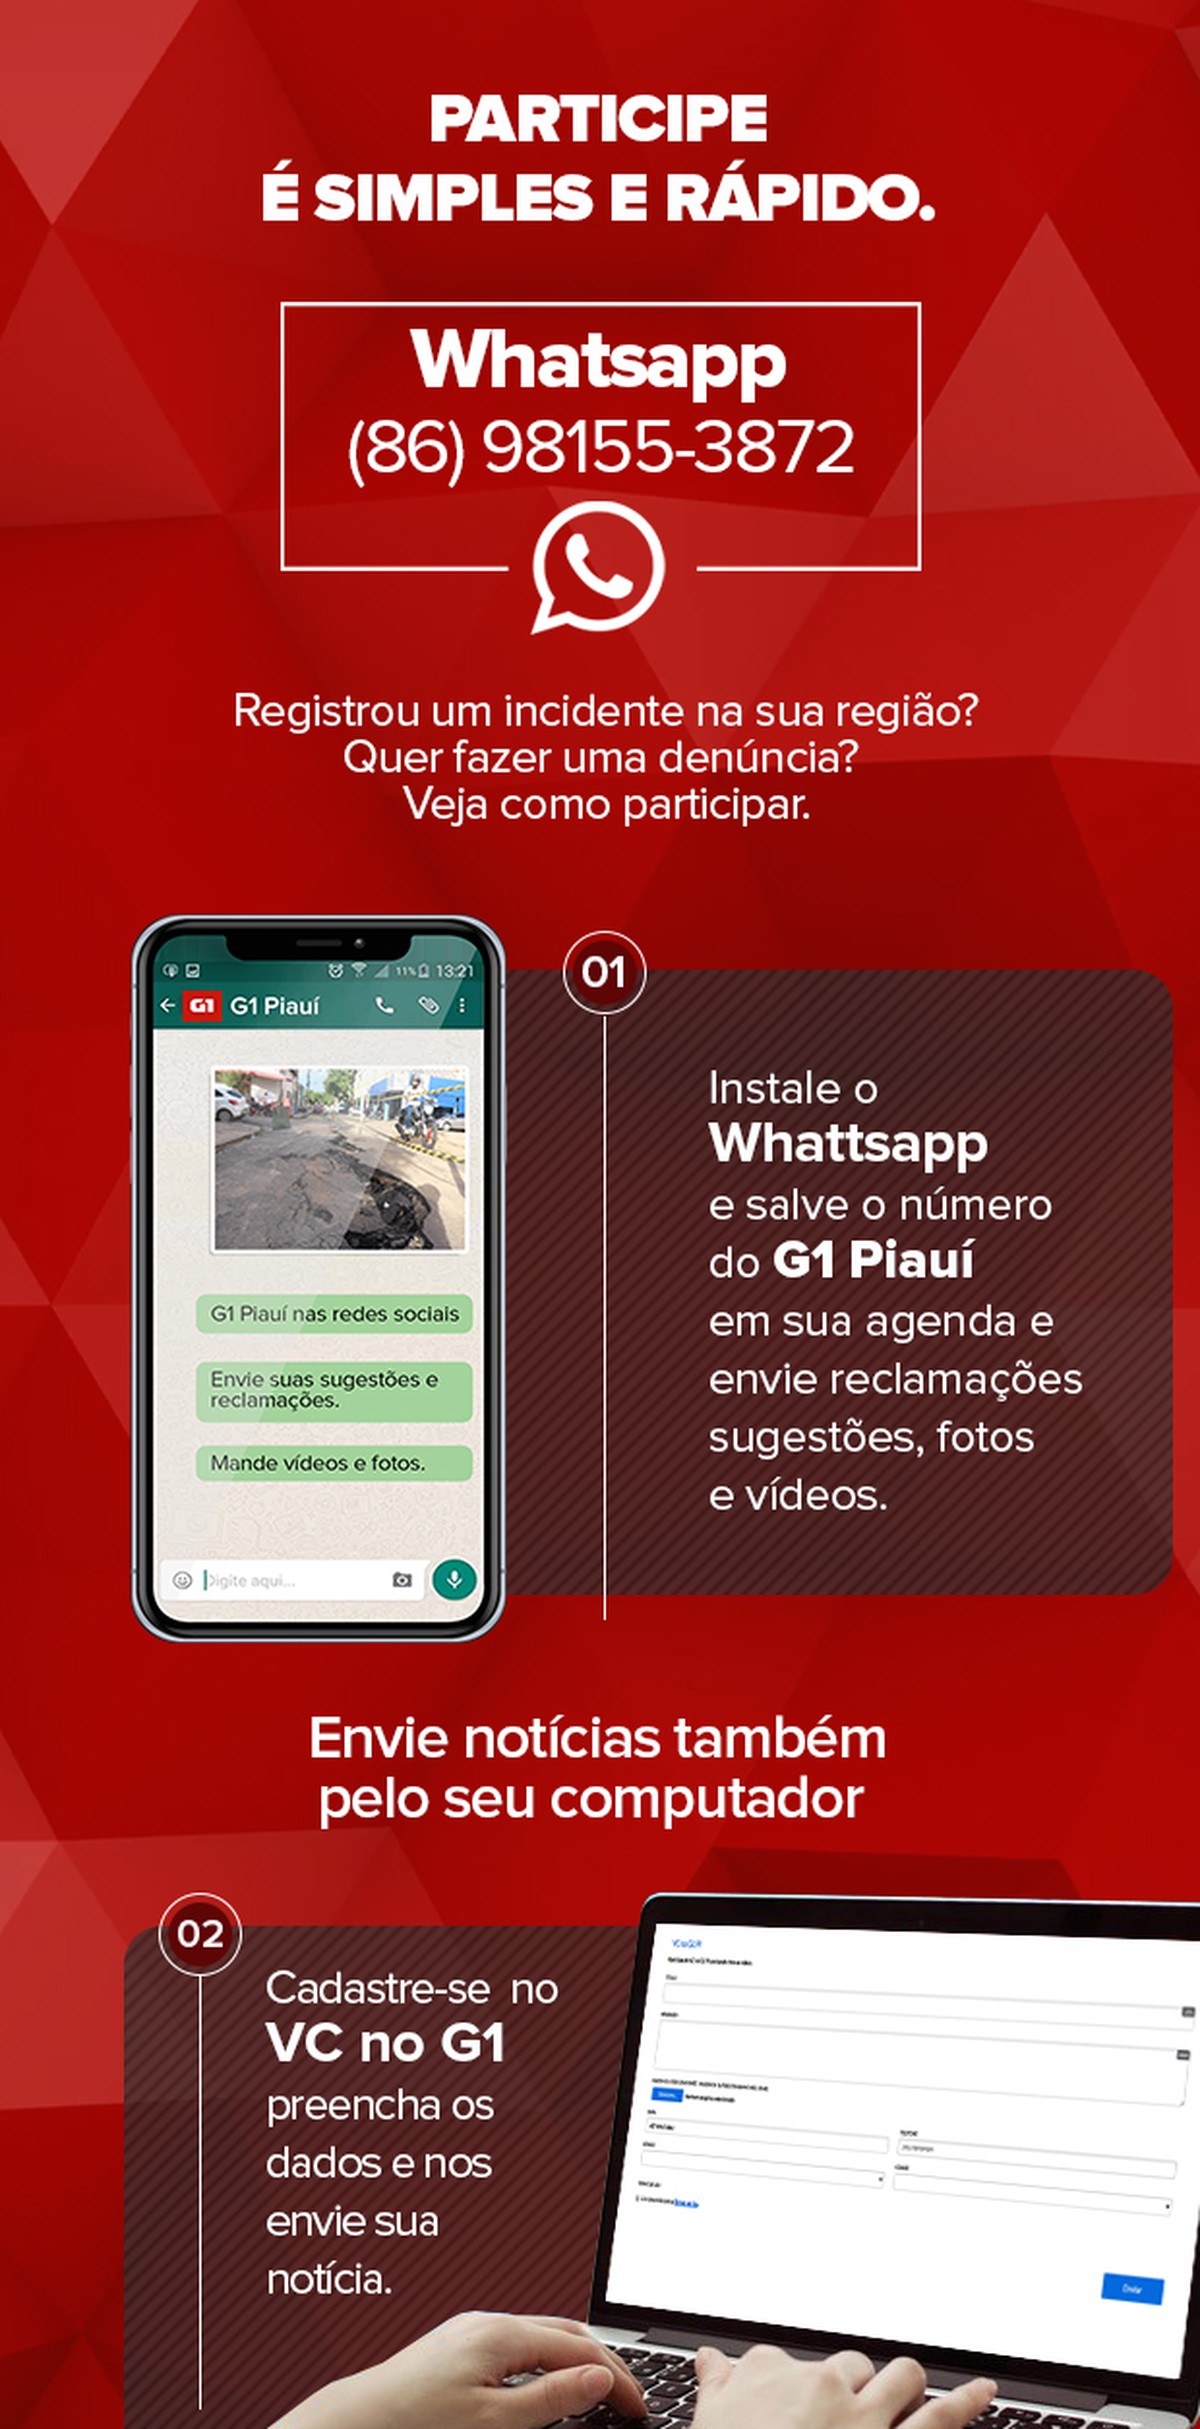 Internautas podem enviar vídeos e fotos para o G1 Piauí pelo Whatsapp;  saiba como | Piauí | G1